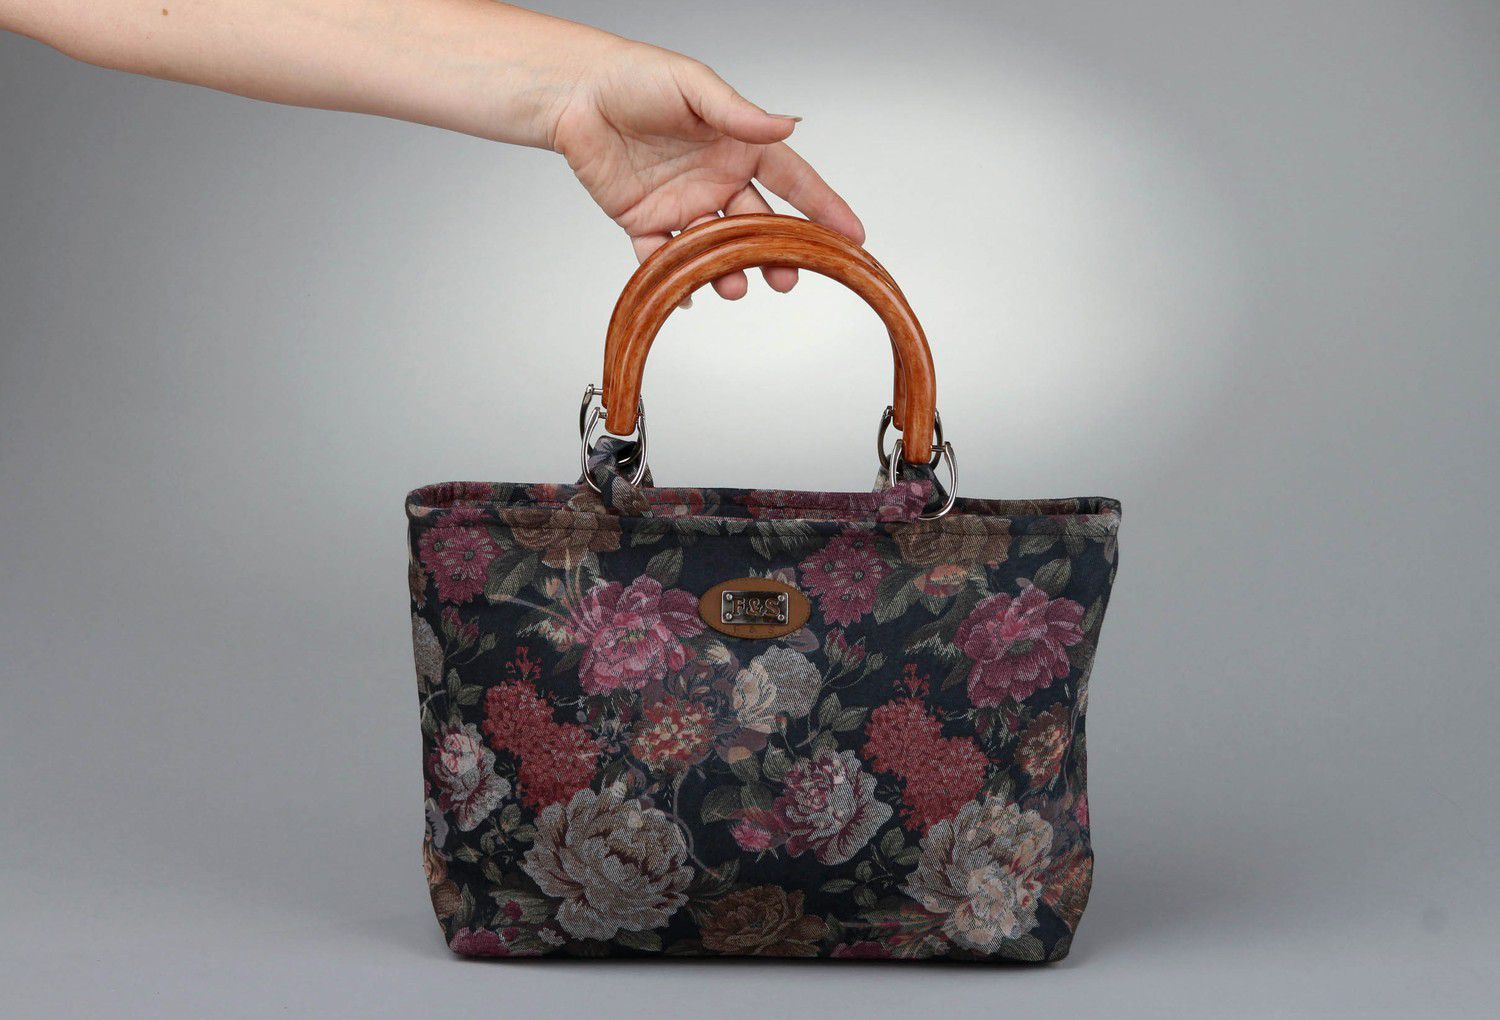 Textil Tasche mit Blumen foto 3